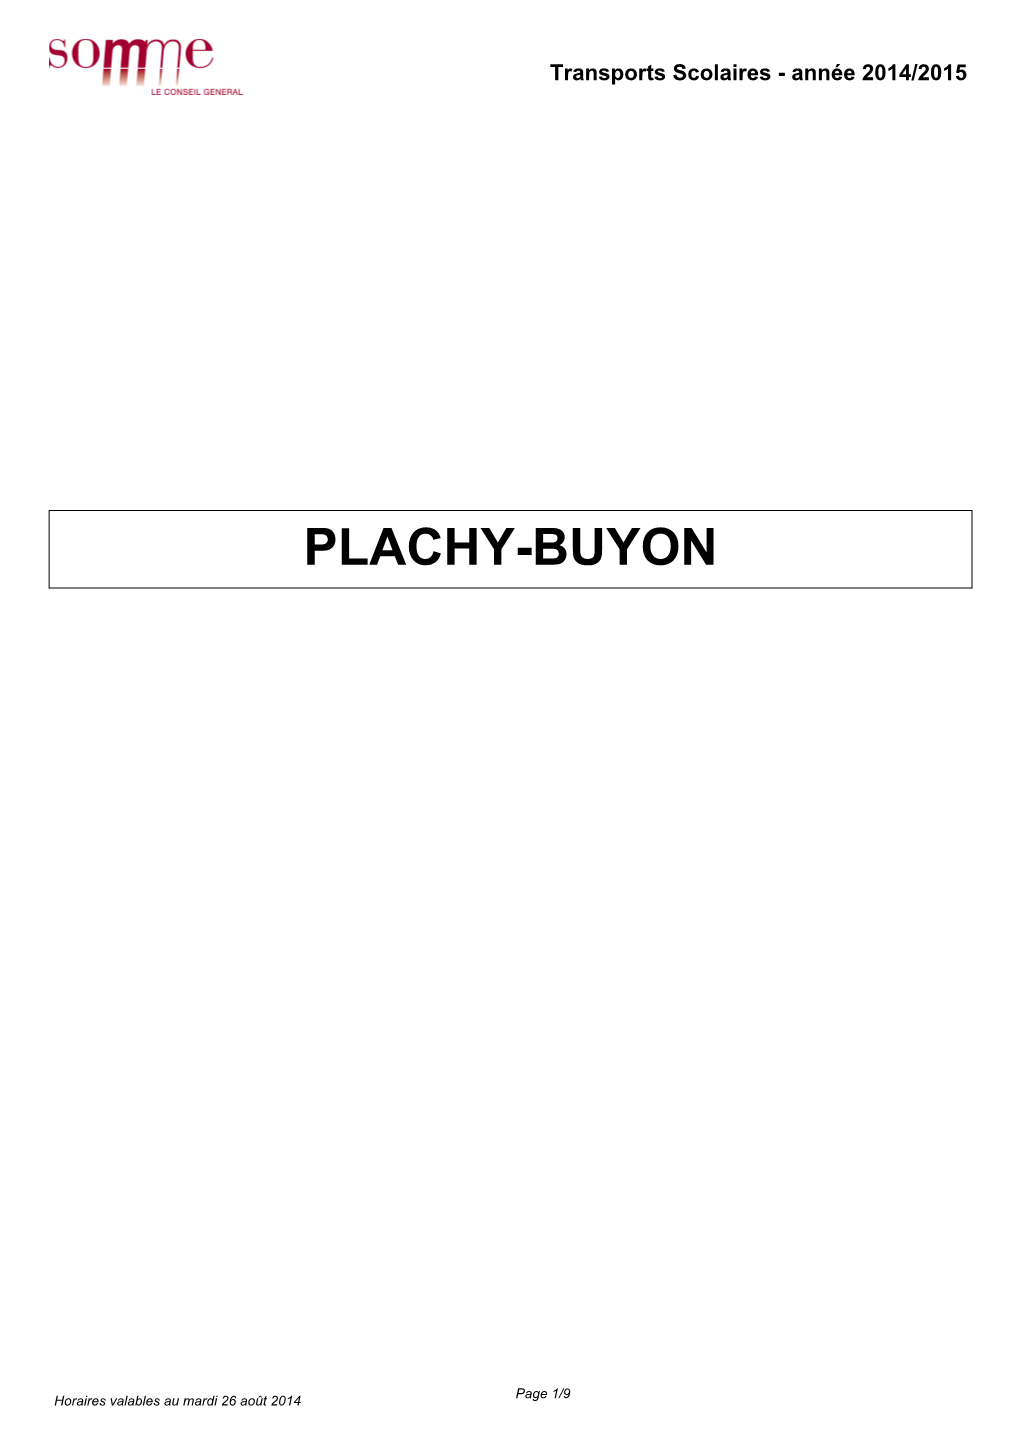 Plachy-Buyon